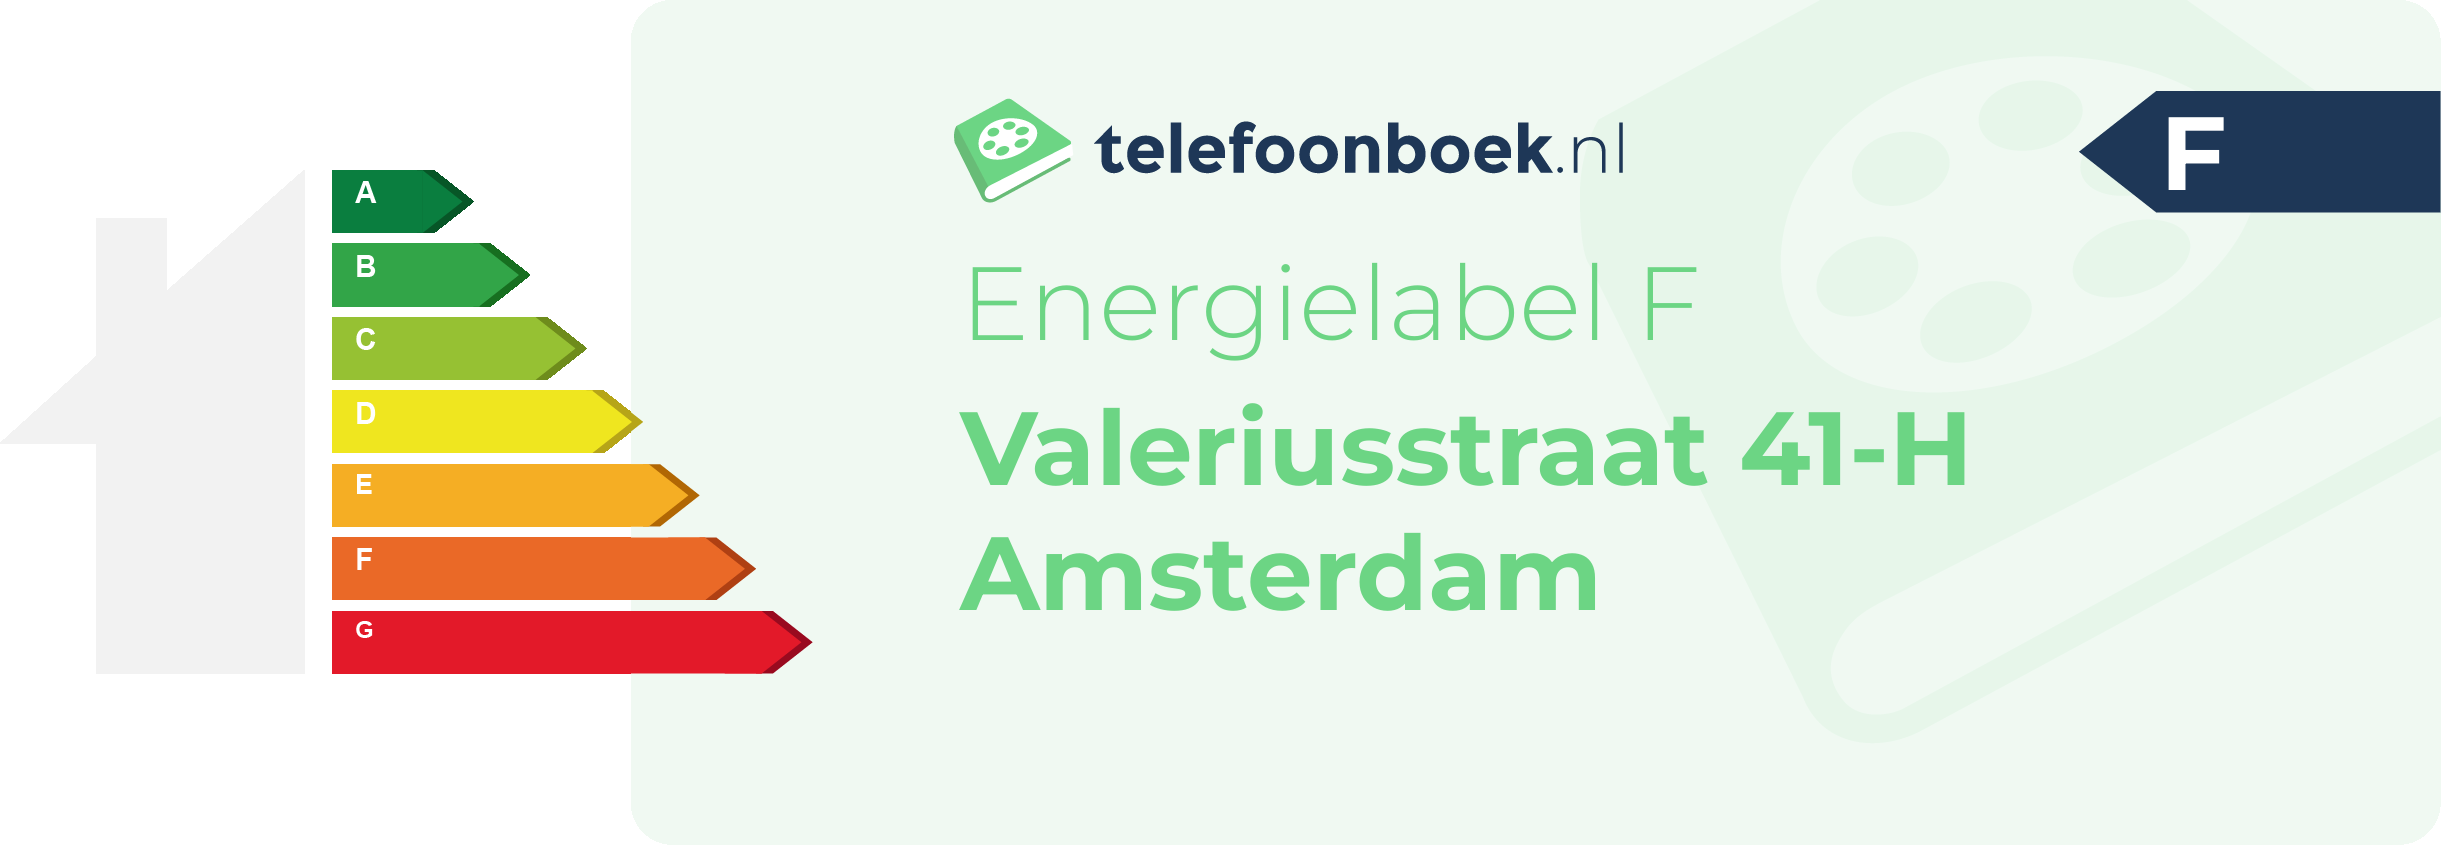 Energielabel Valeriusstraat 41-H Amsterdam